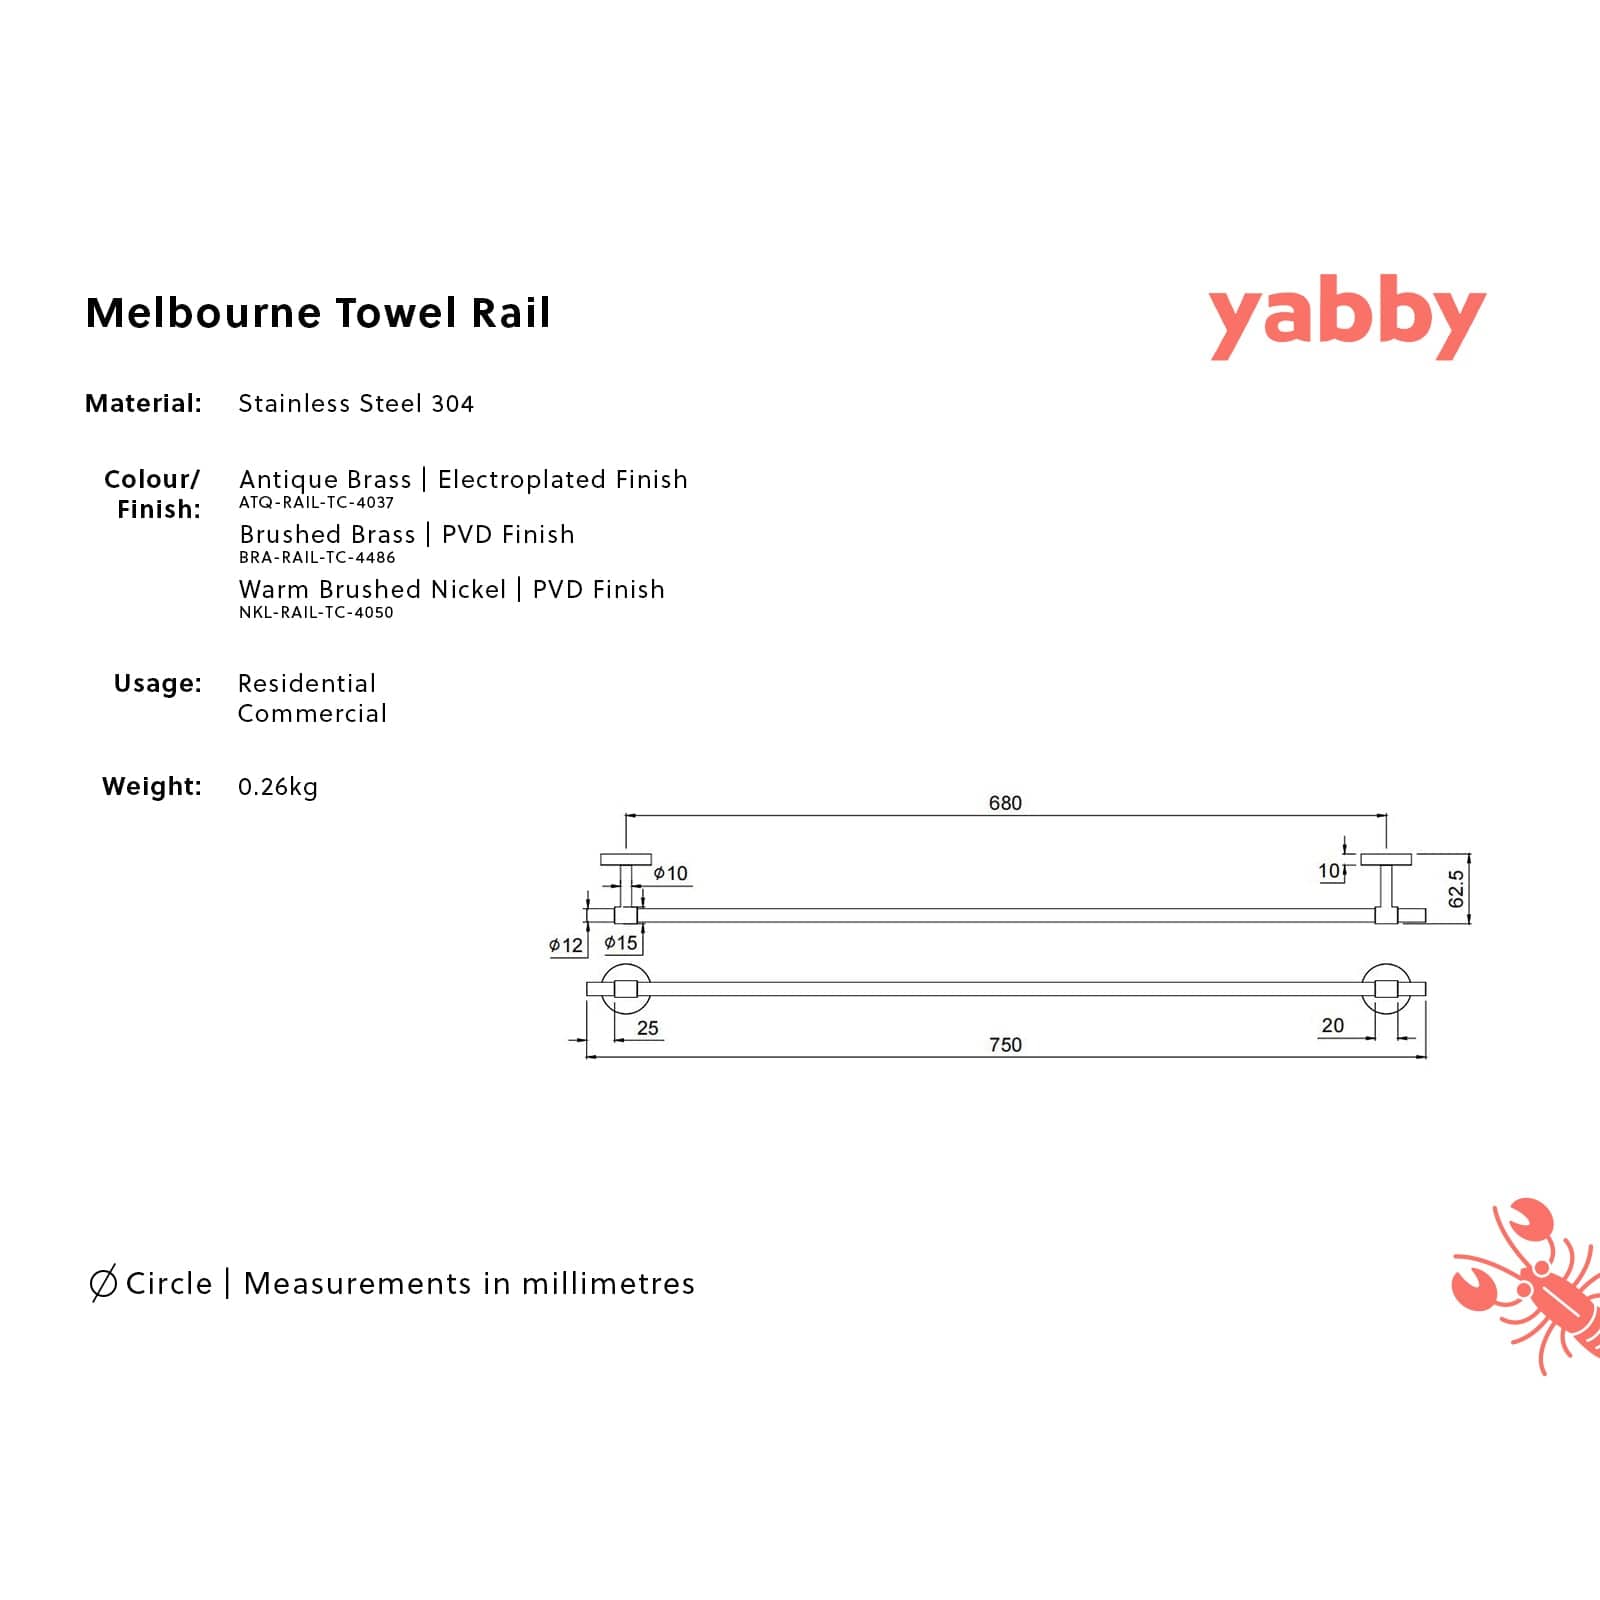 TileCloud TAPWARE Melbourne Towel Rail Antique Brass 750mm